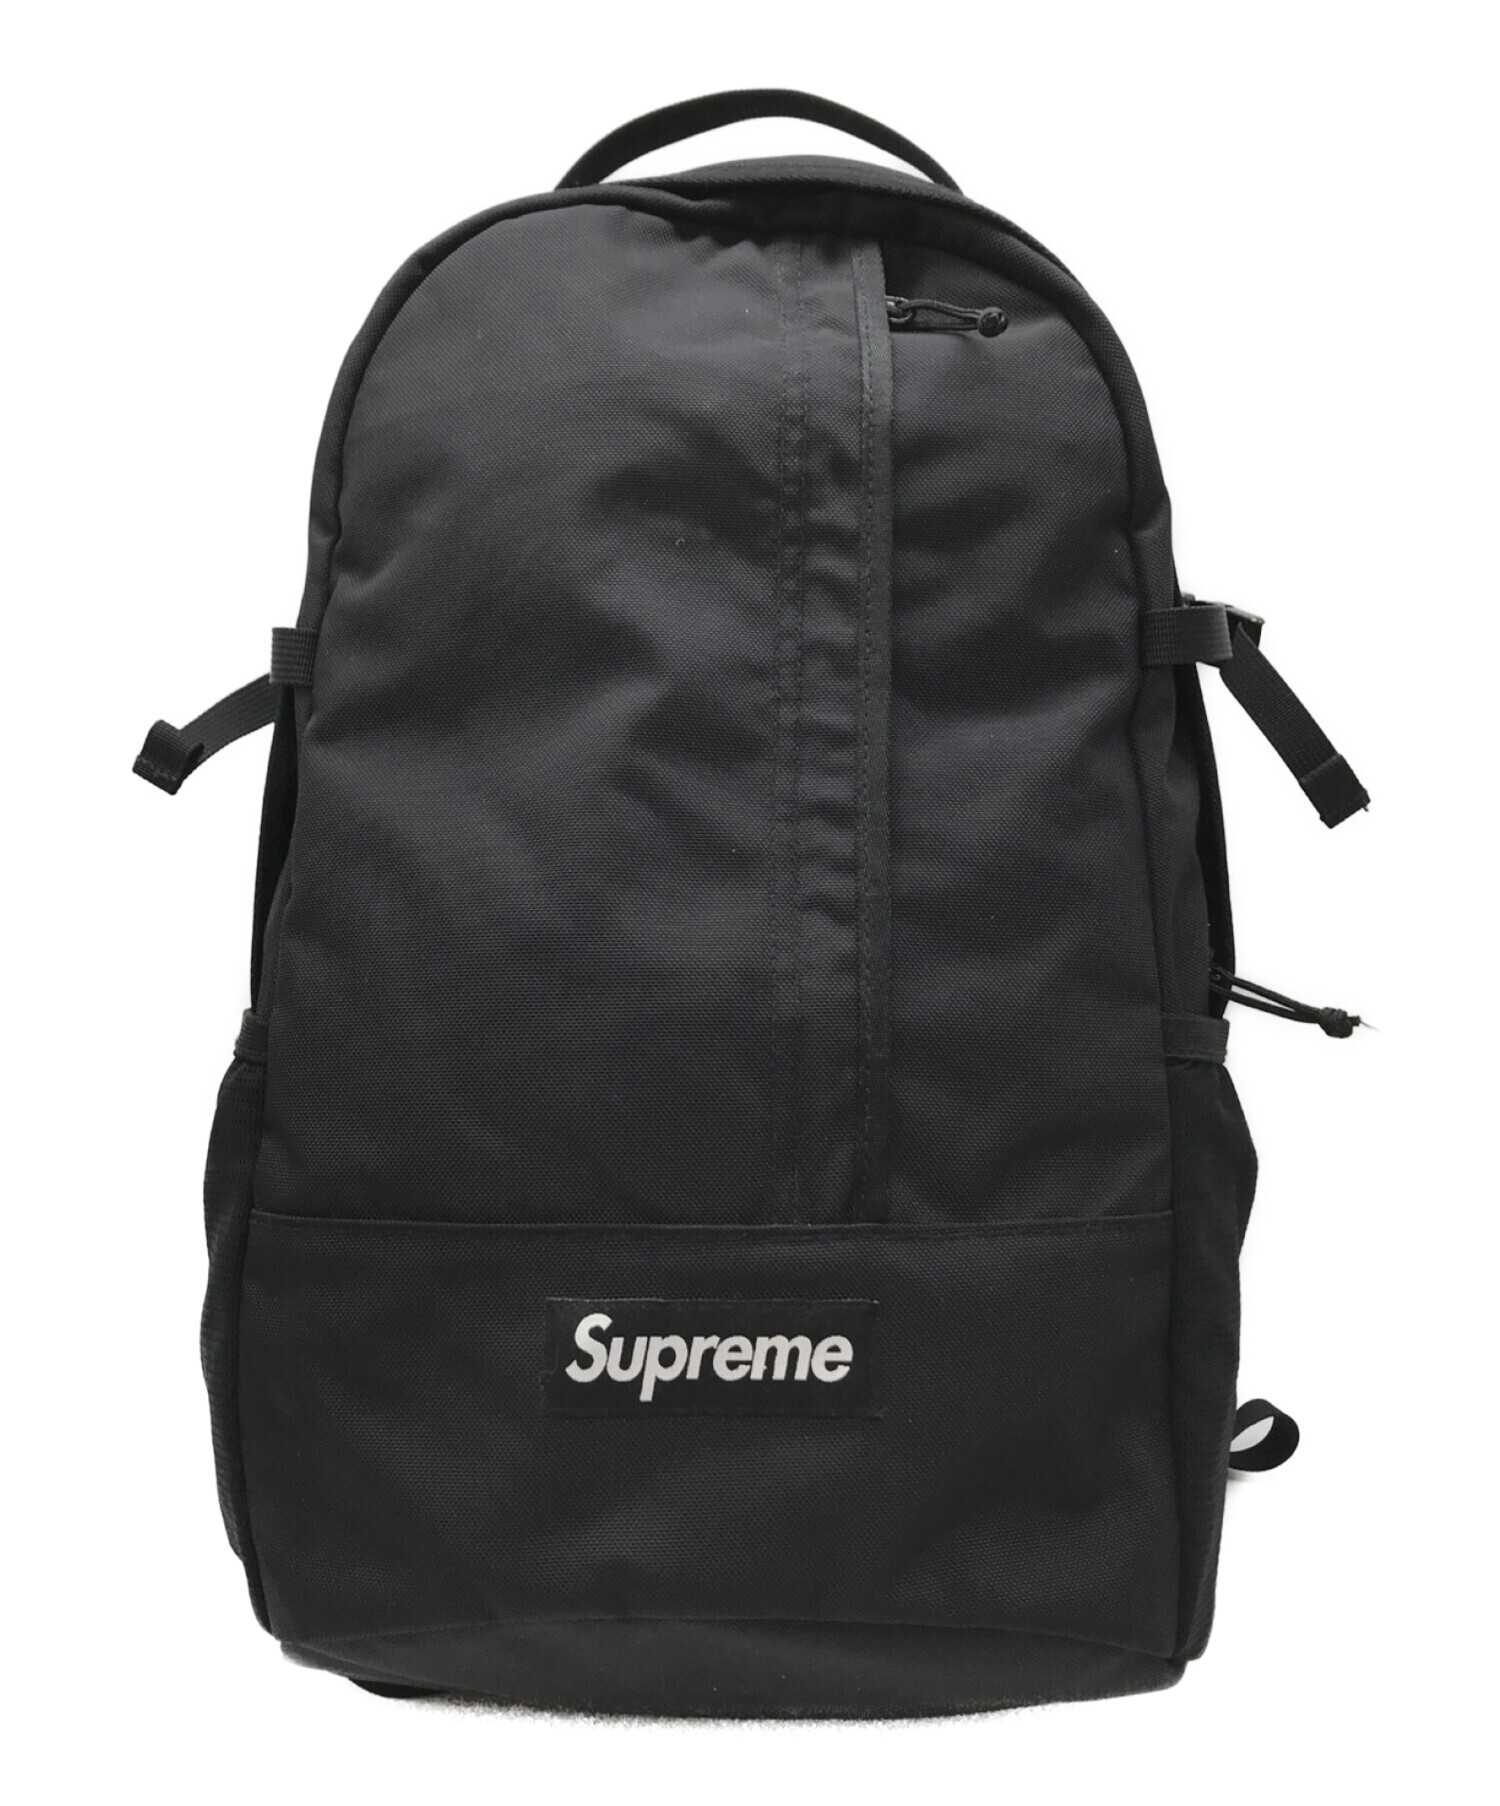 SUPREME (シュプリーム) 18SS backpack バッグパック ブラック